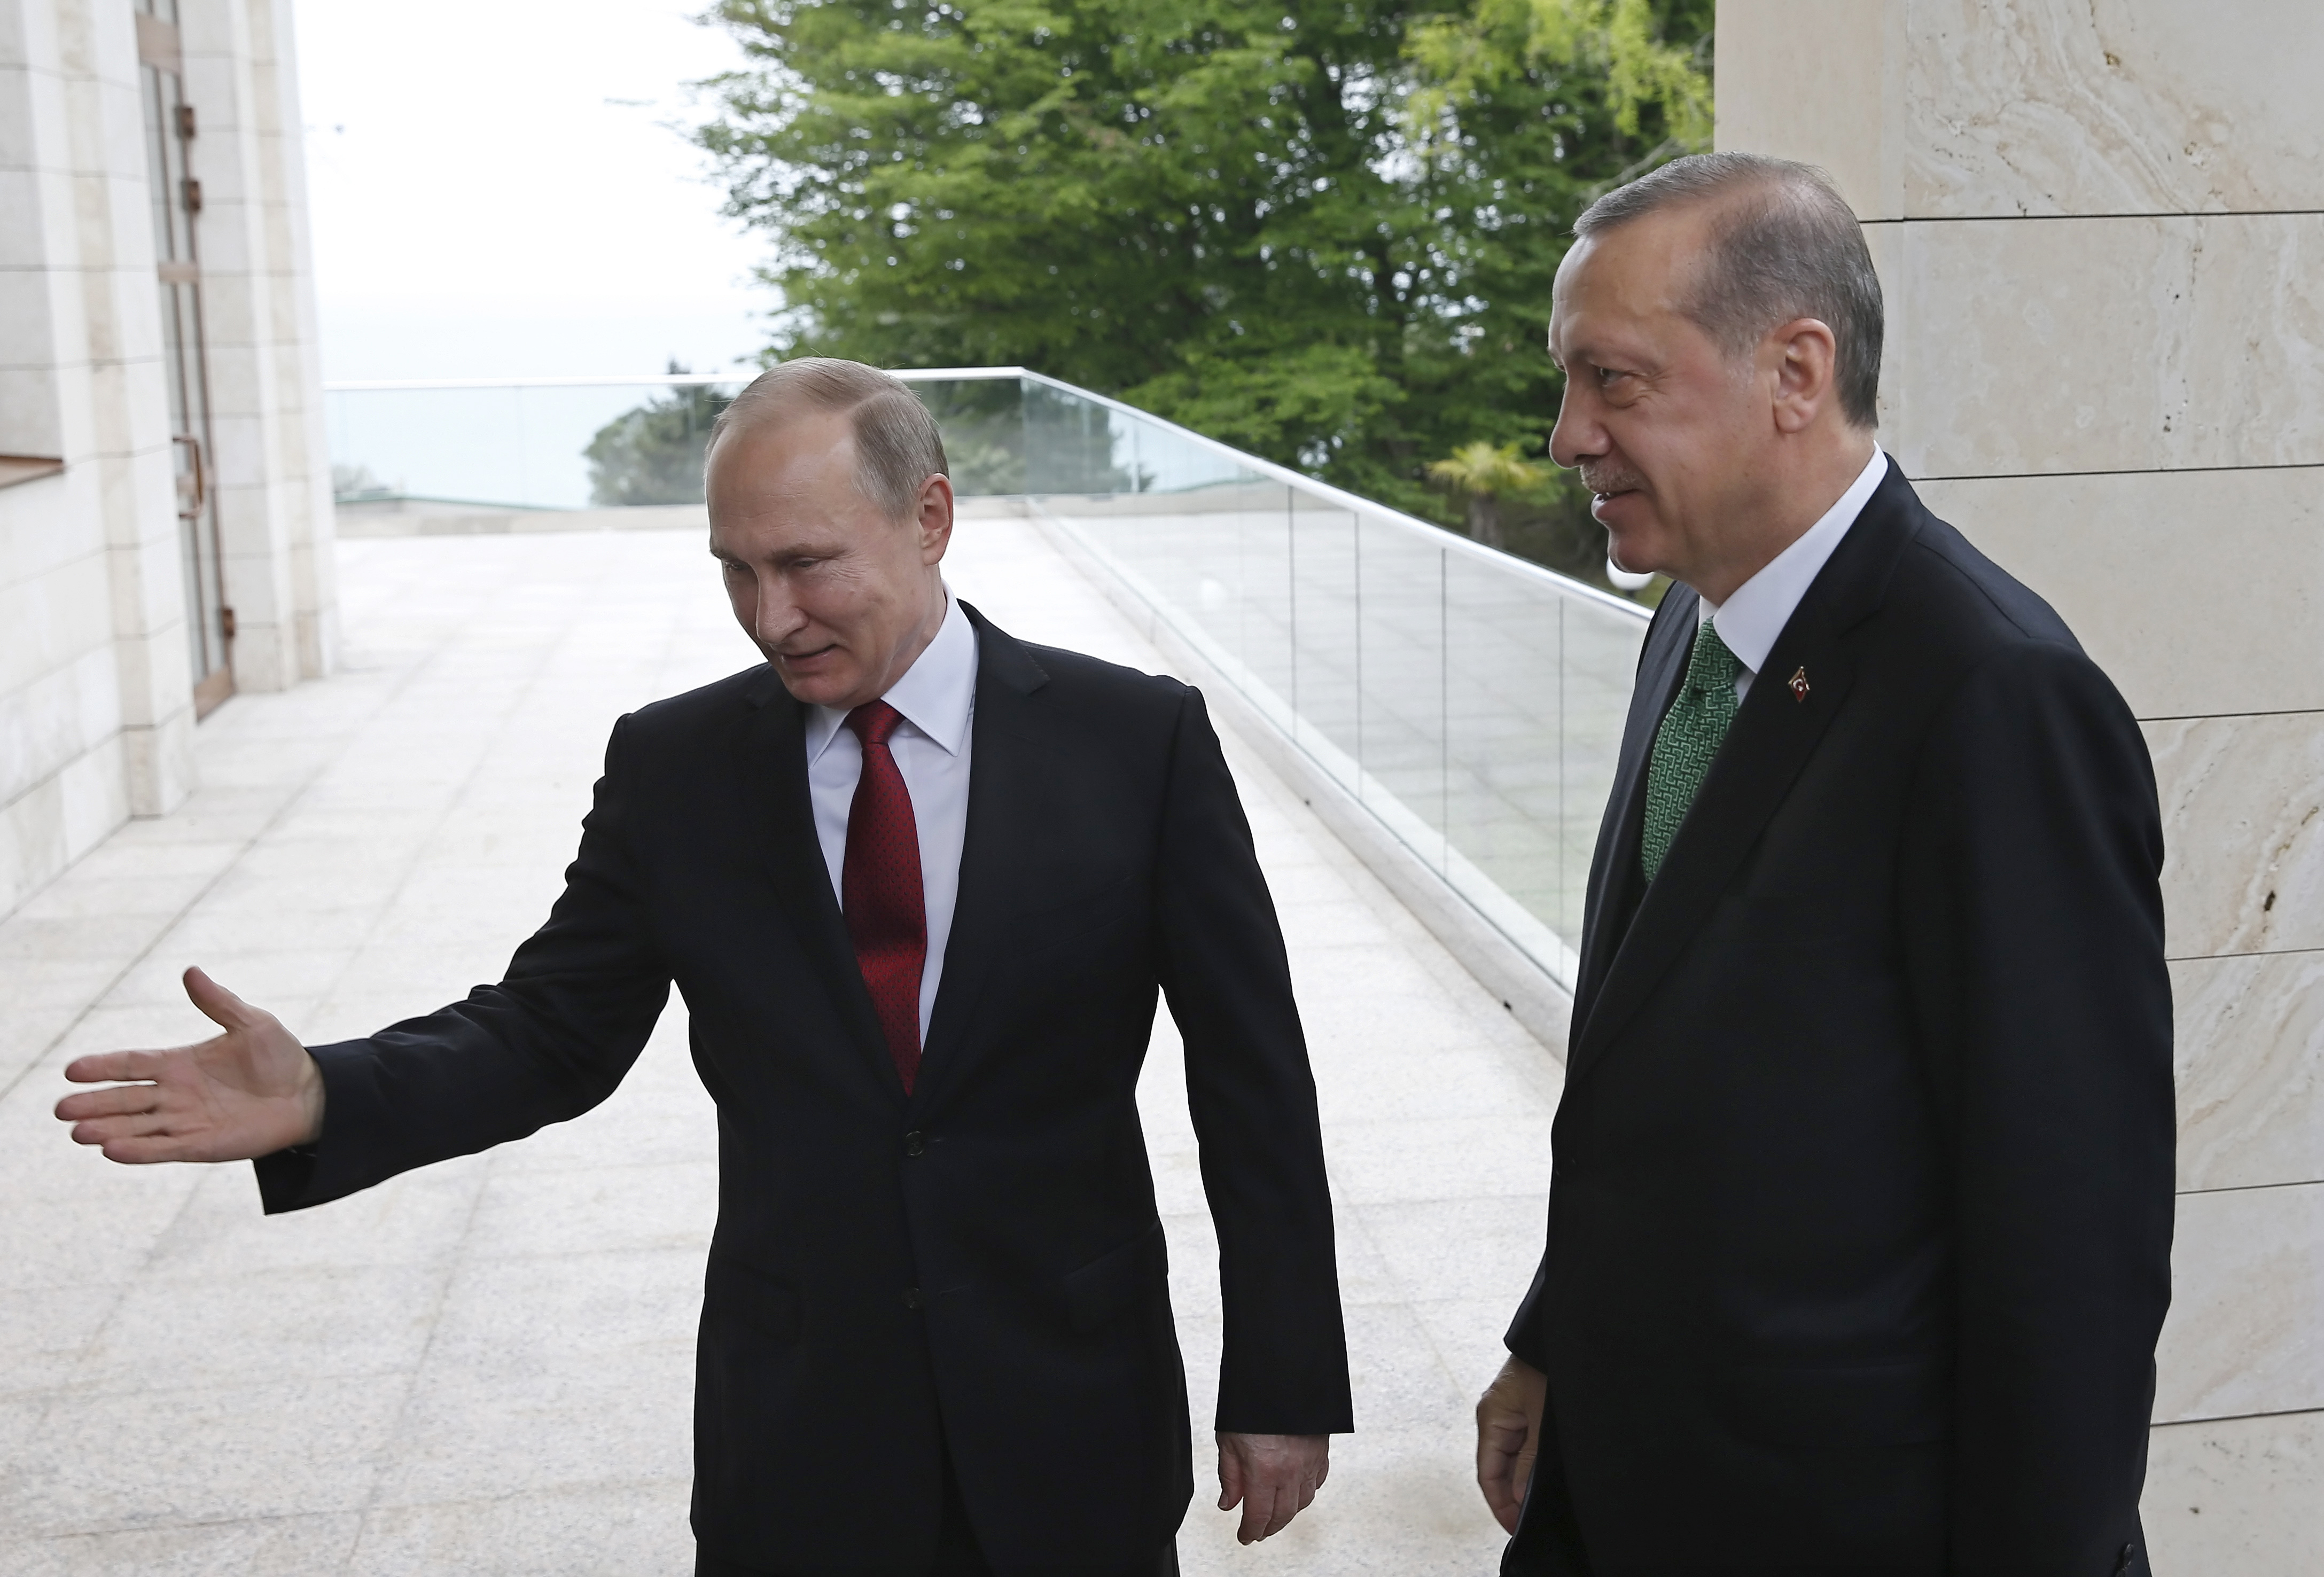 Putin empfängt Erdogan im Jahr 2017 in Sotschi (Russland) zu Gesprächen über den Syrienkonflikt. | picture alliance / Yuri Kochetkov/POOL European Pressphoto Agency/AP/dpa